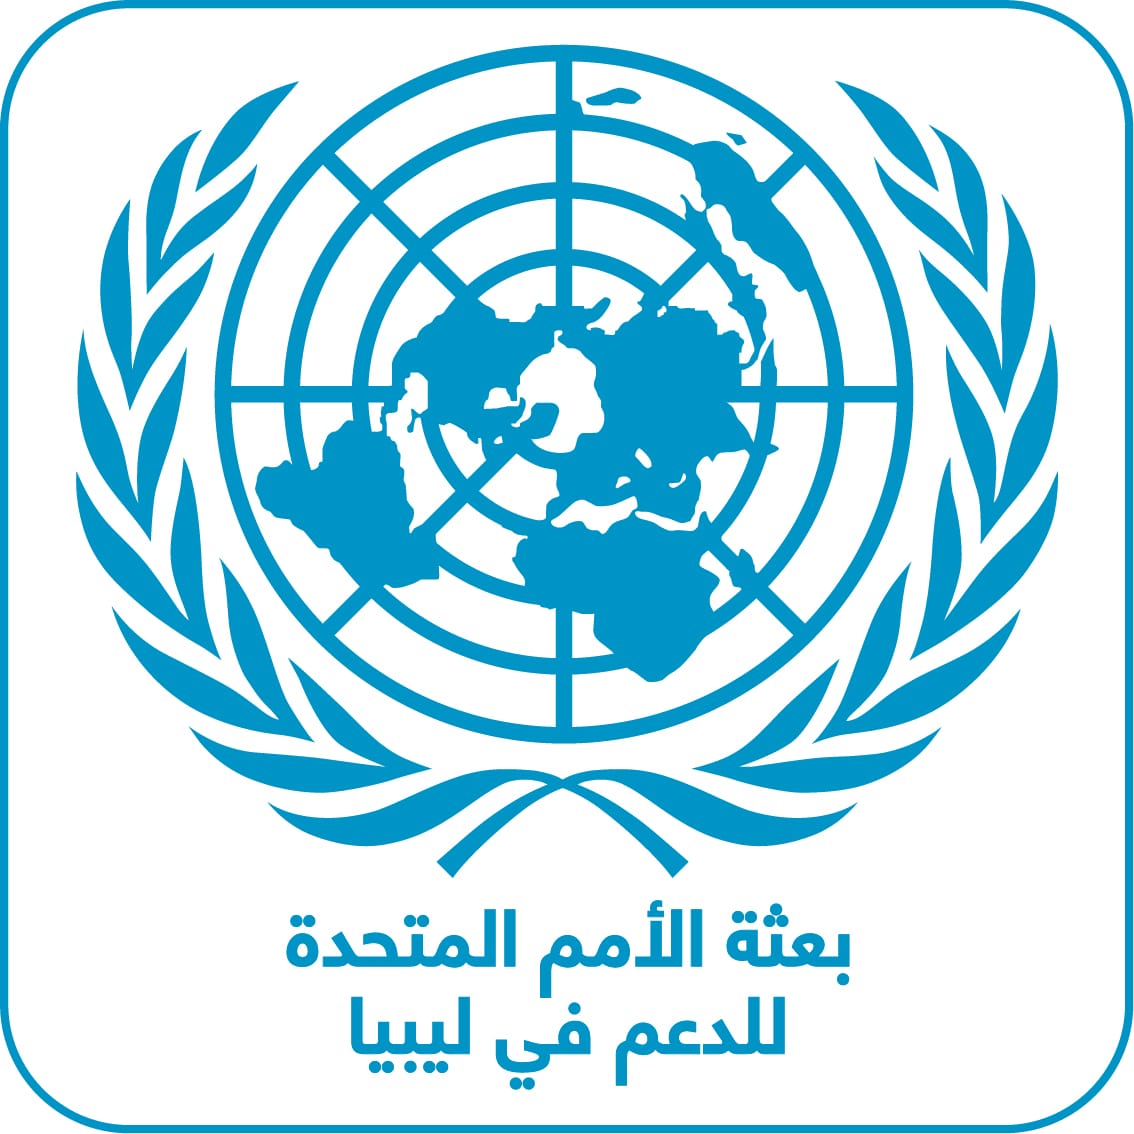 بعثة الأمم المتحدة للدعم في ليبيا ترحب بالإعلان عن إعادة توحيد مصرف ليبيا المركزي